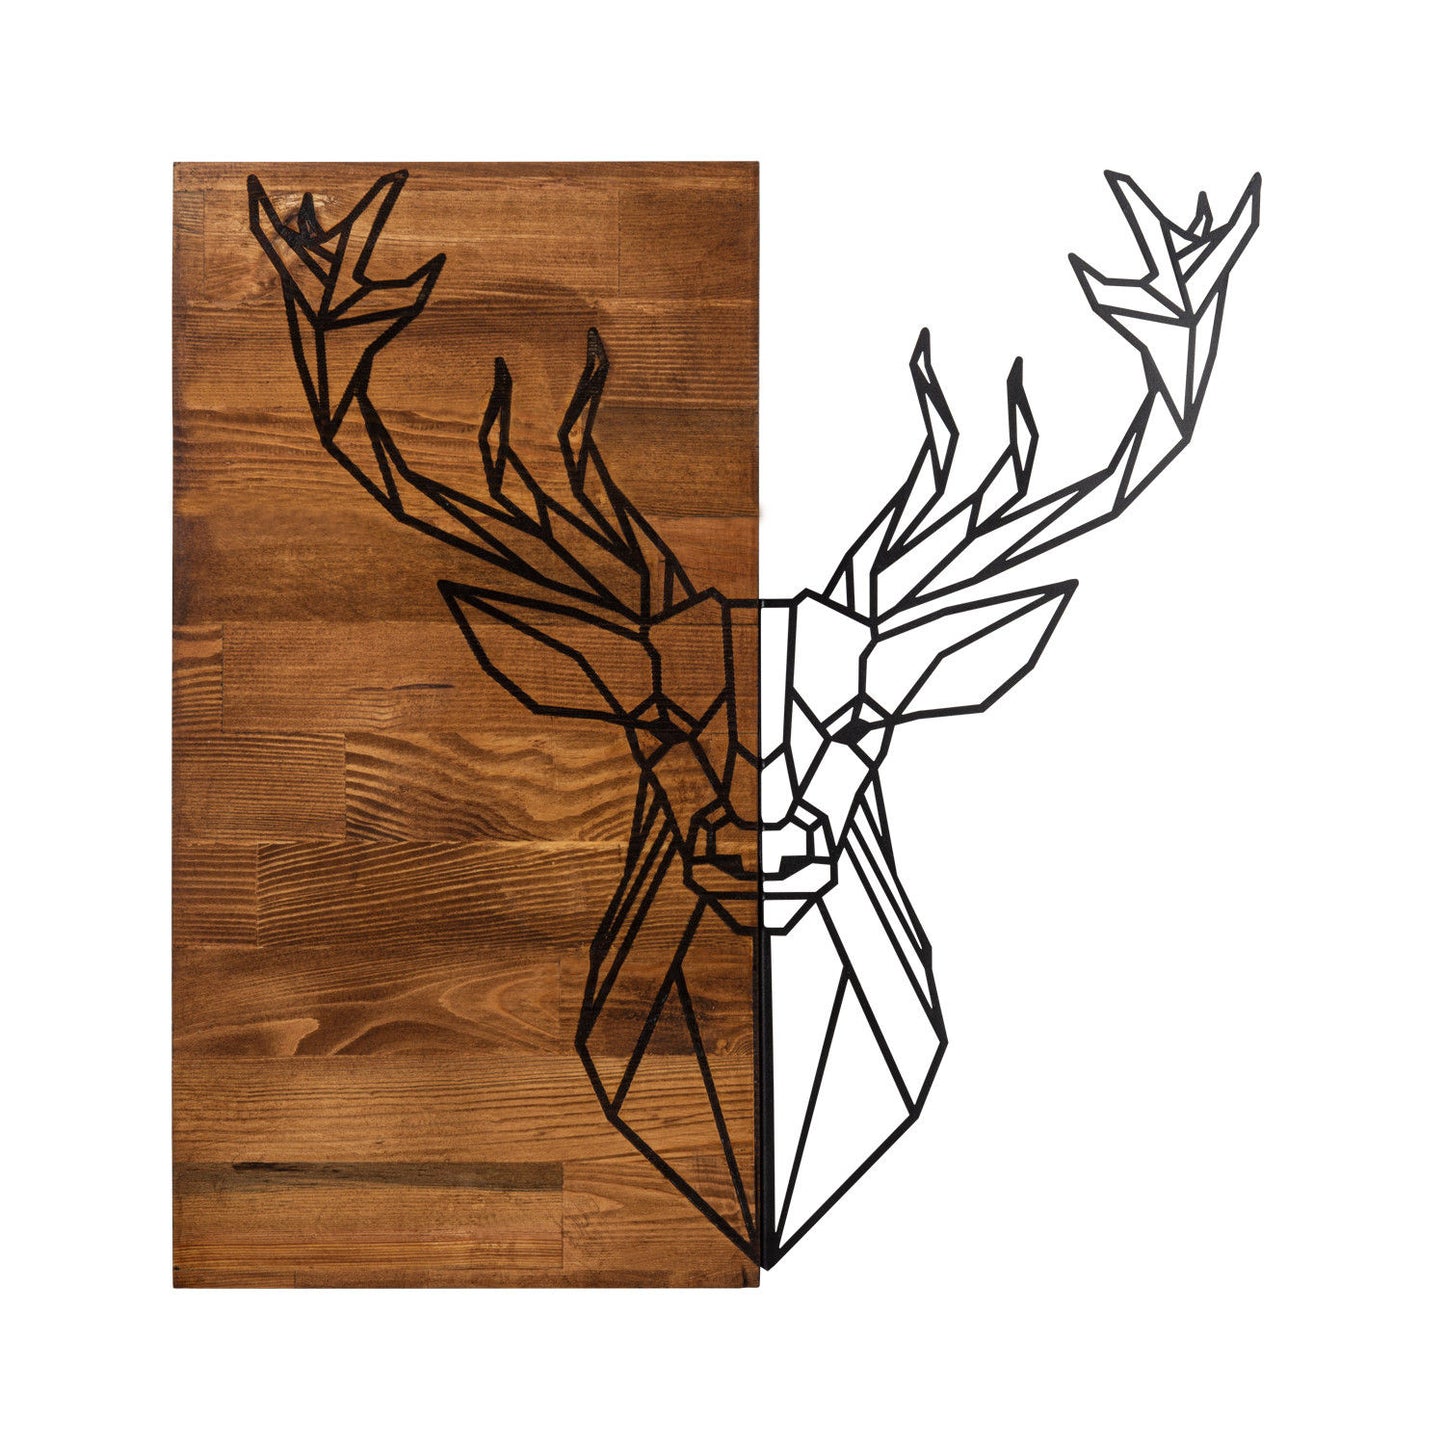 Deer1 - Dekorativt tilbehør til trævægge